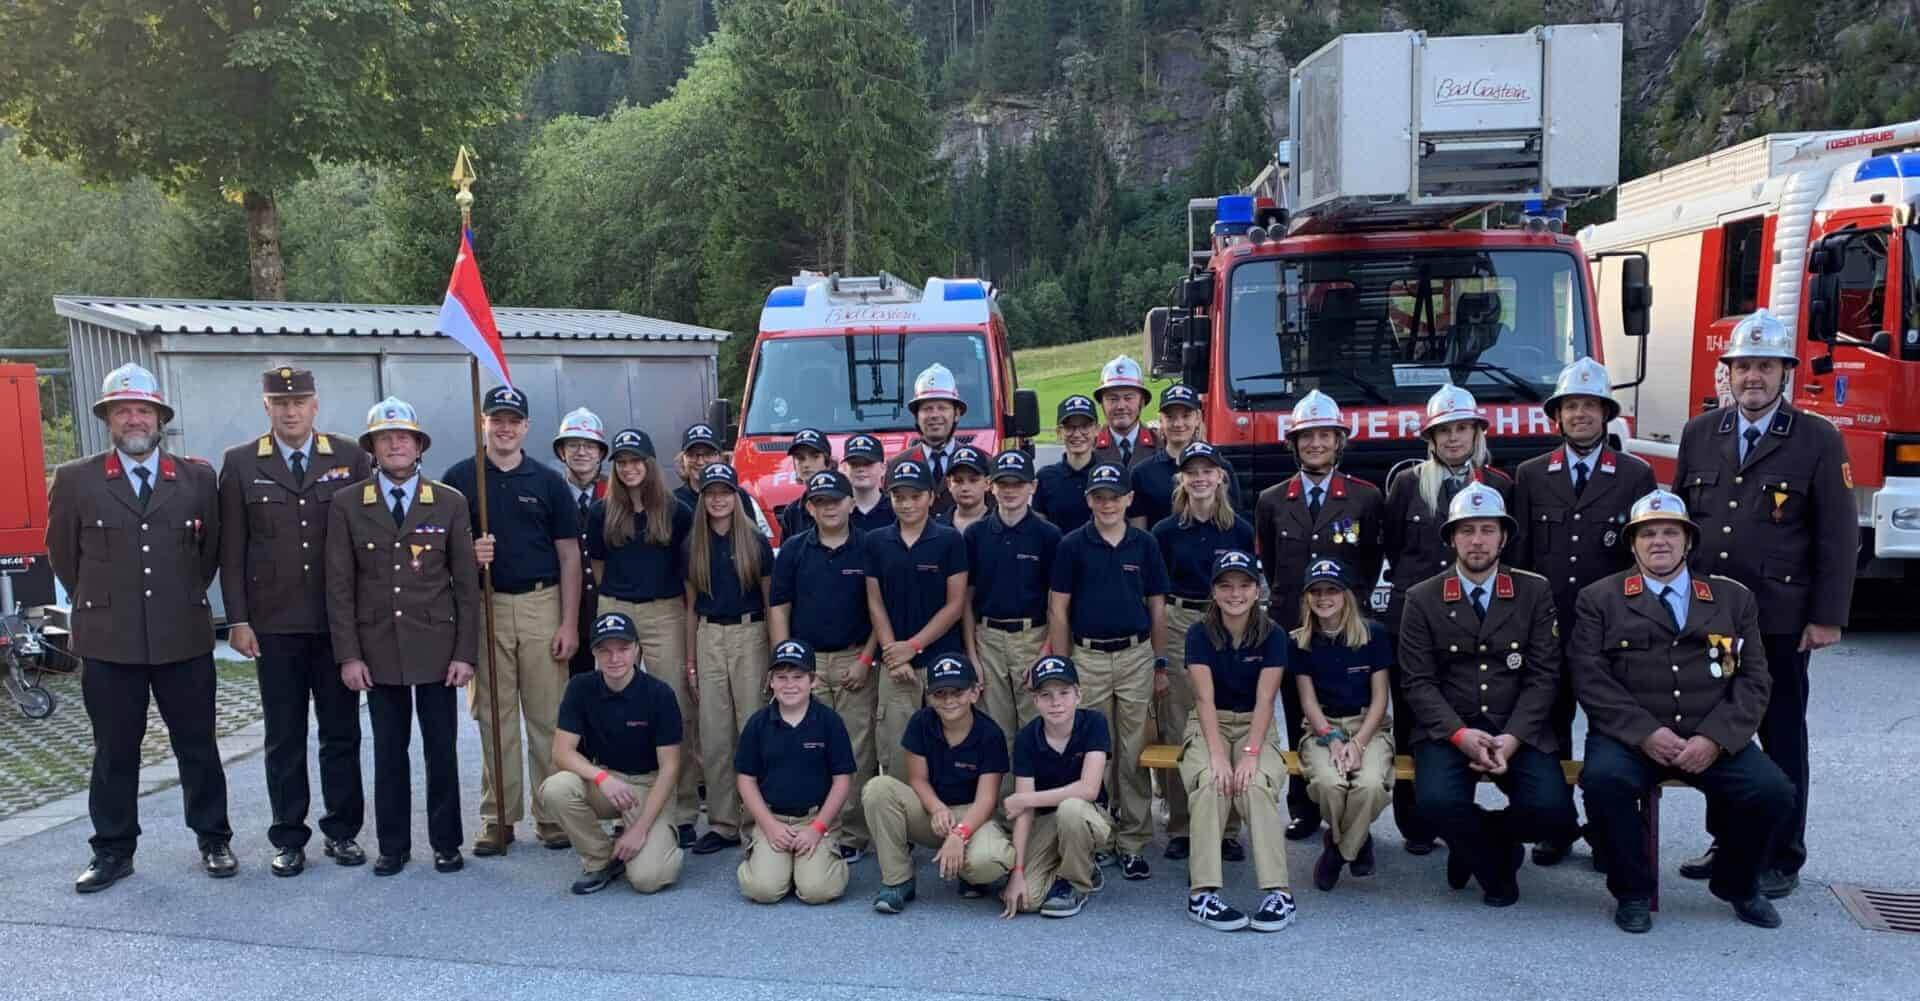 Feuerwehrjugend- Wimpelsegnung bei der Feuerwehrjugend in Bad Gastein